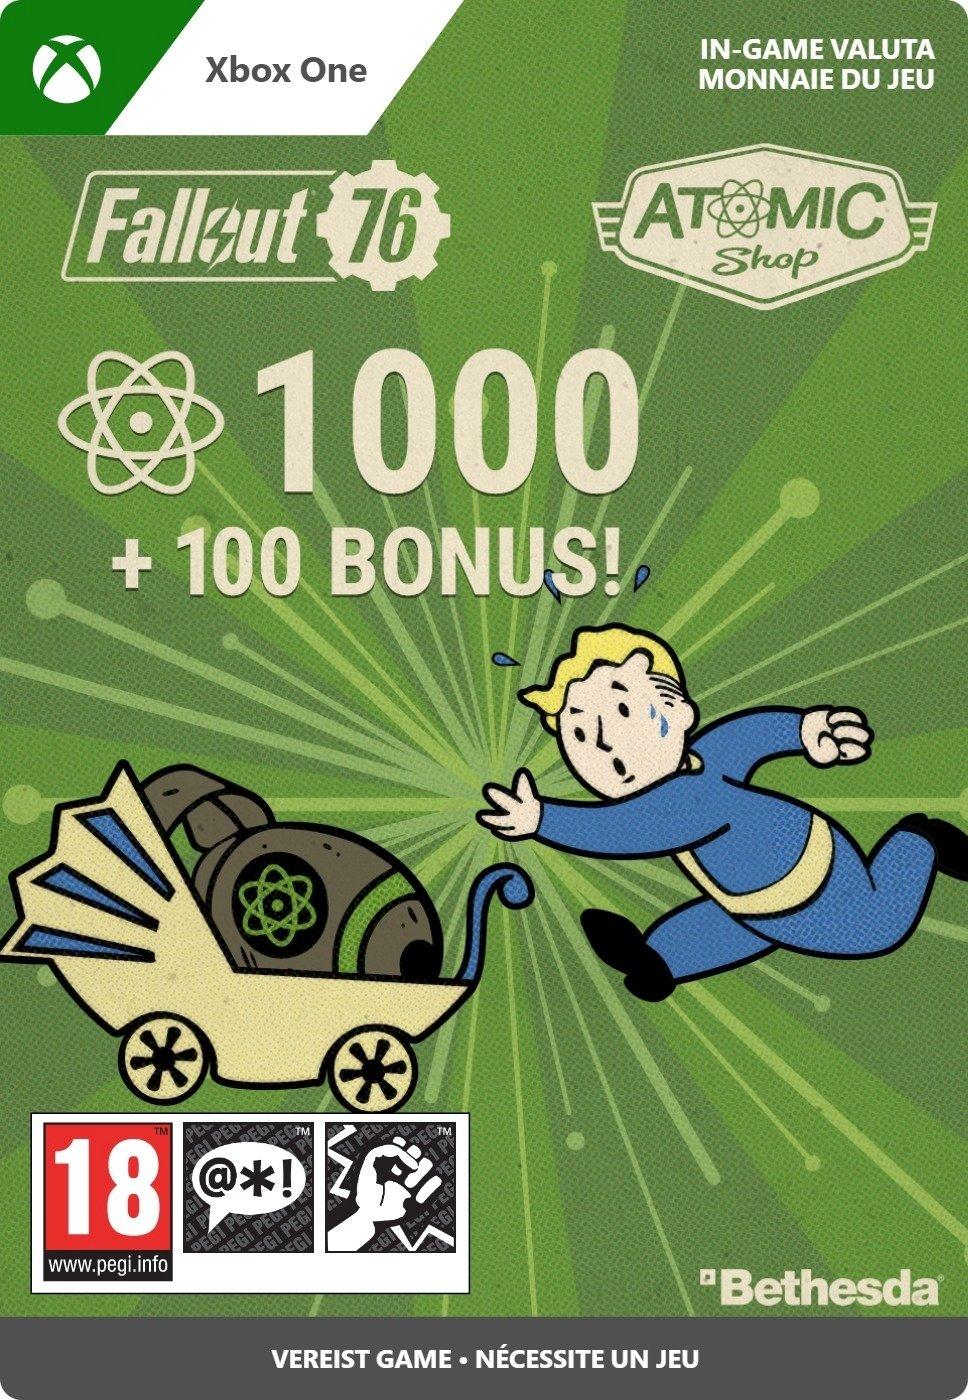 Fallout 76: 1000 (+100 Bonus) Atoms - Xbox One - Currency | 7LM-00060 (4281518c-aaf3-e346-9761-8200e2c941e4)